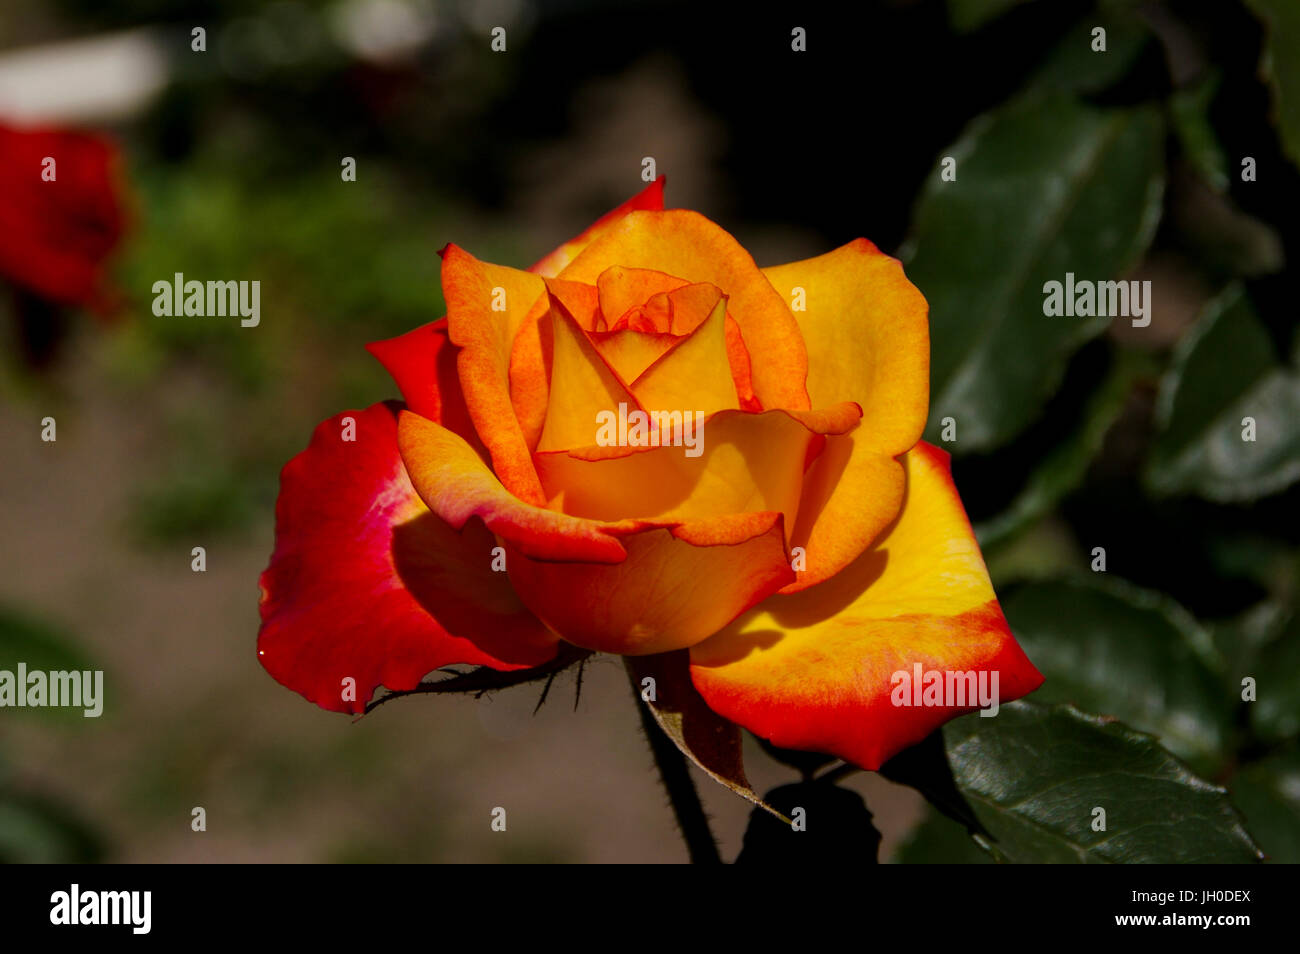 Bild von roten und gelben rose Blume Stockfoto